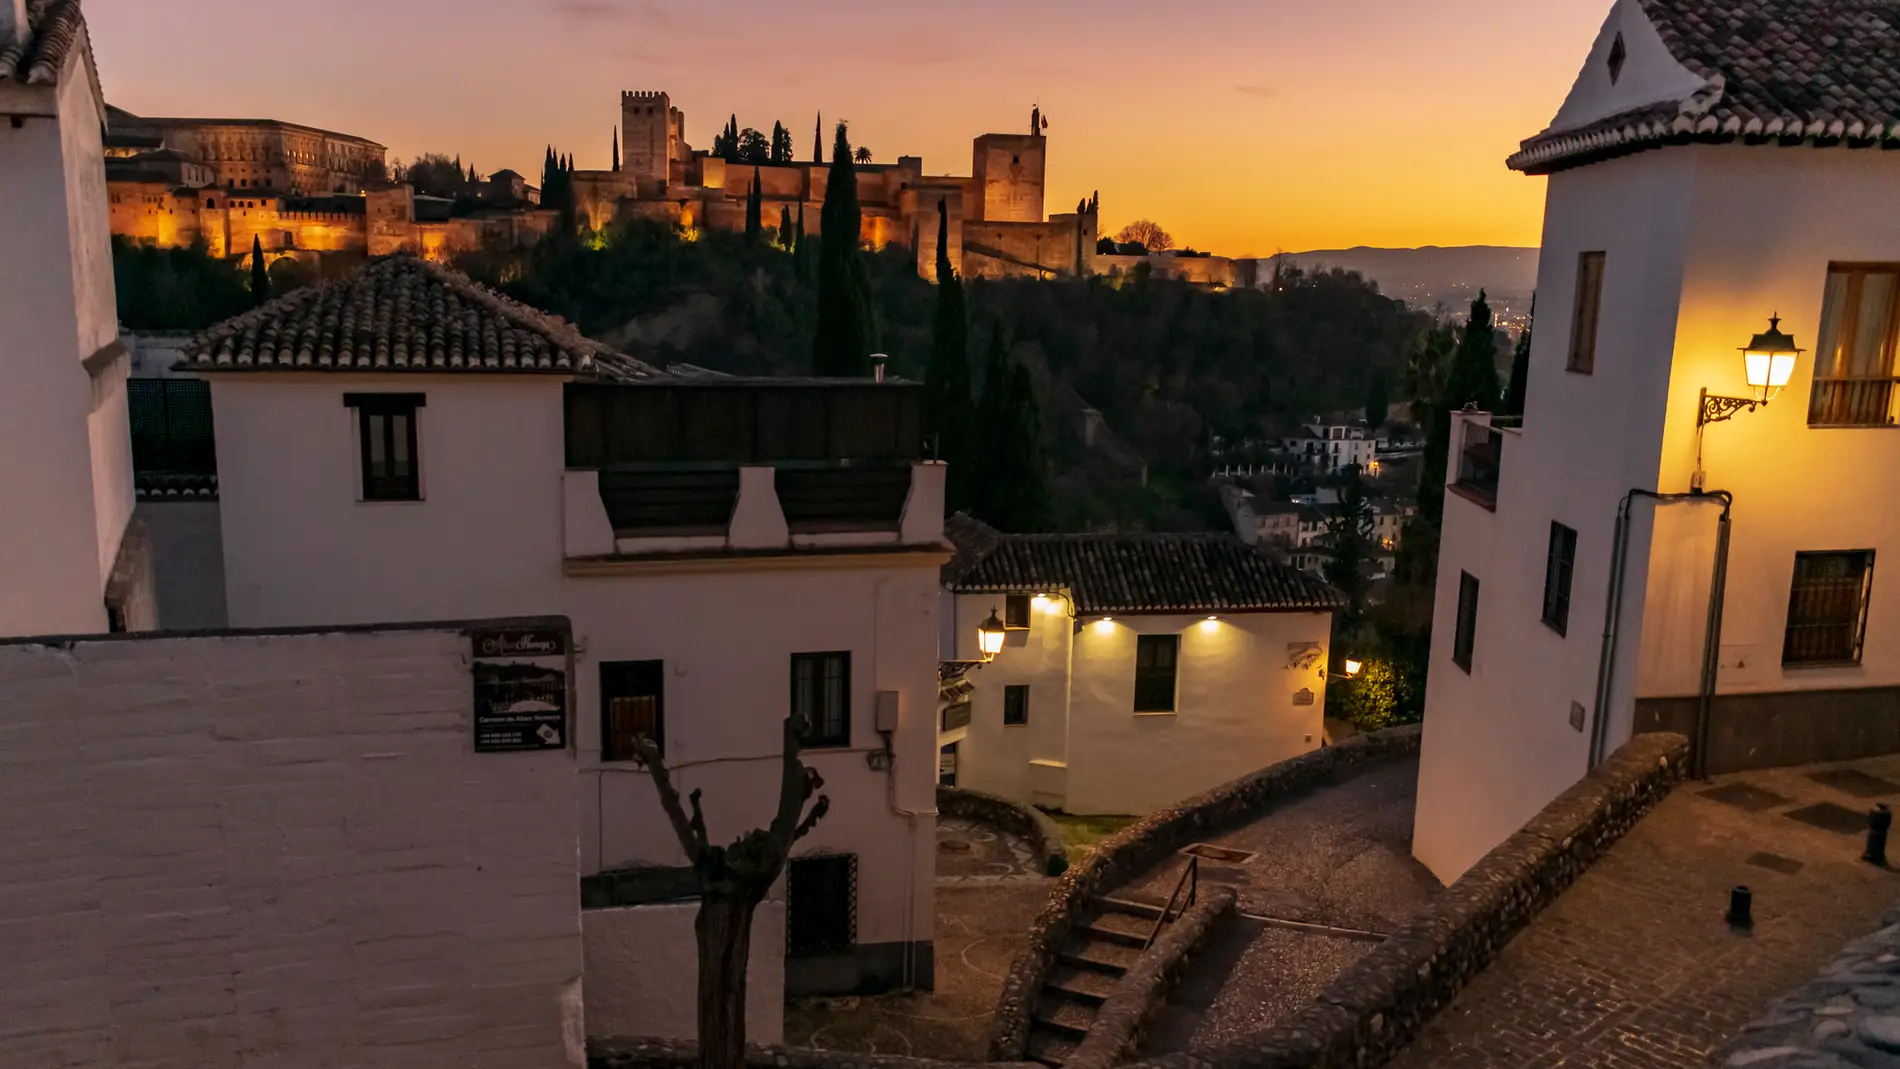 Albaicín y Alhambra de Granada